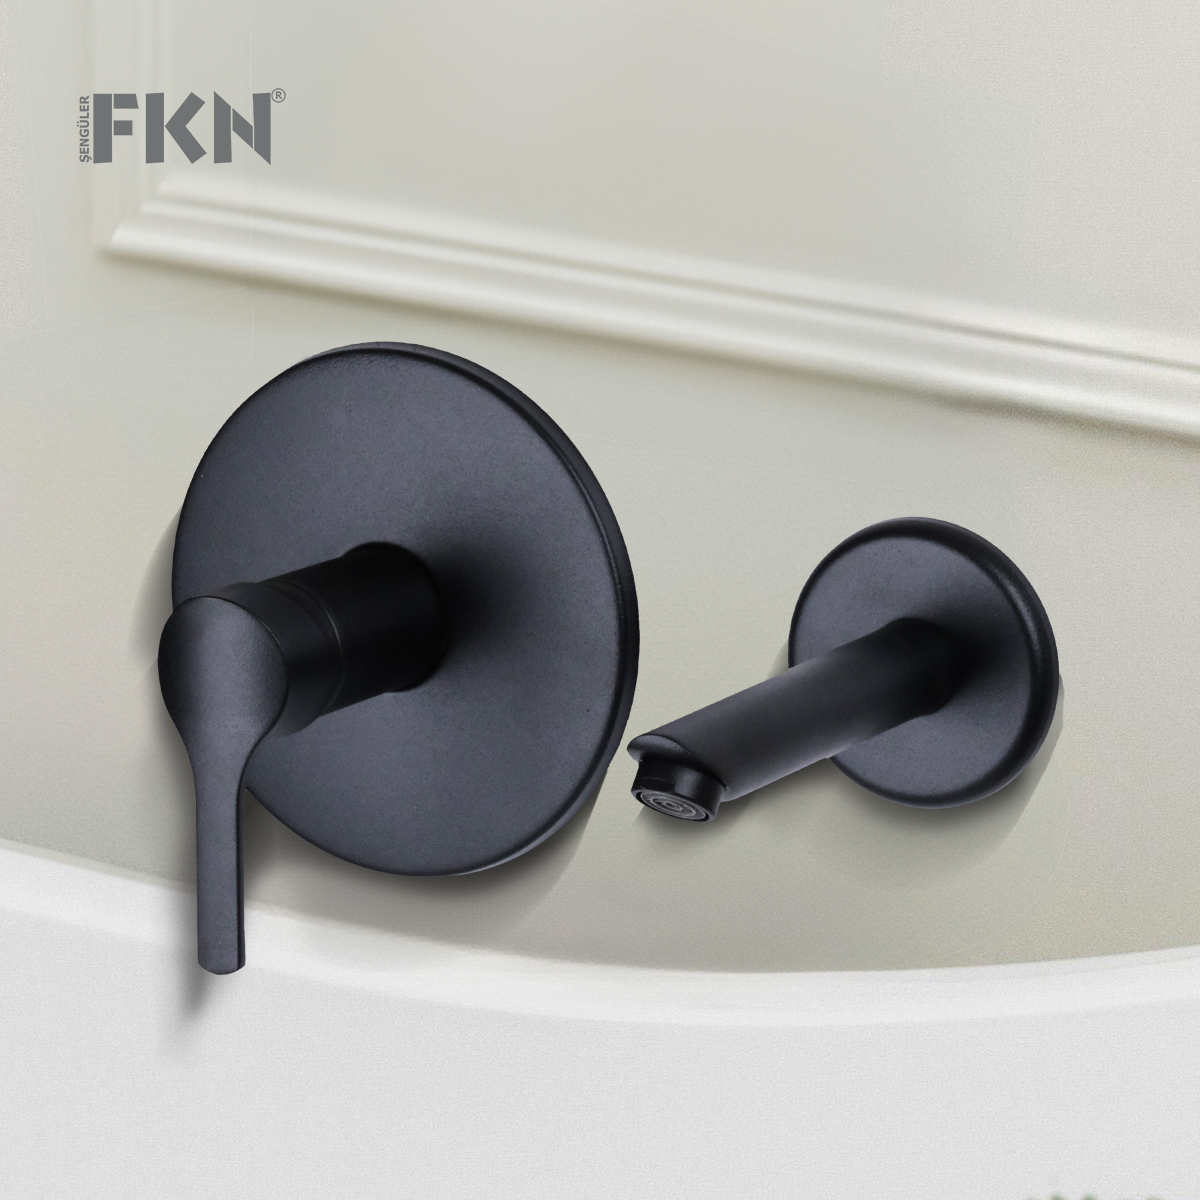 FKN Ankastre Yuvarlak Siyah Lavabo Bataryası,Materyal Materyal = %100 Pirinç Kolay temizlenebilir. Soğuk su ve sıcak su kontrollüdür. 5 Yıl Garantilidir. Sıva altı ve sıva üstü grubu birliktedir. MADE IN TURKEY